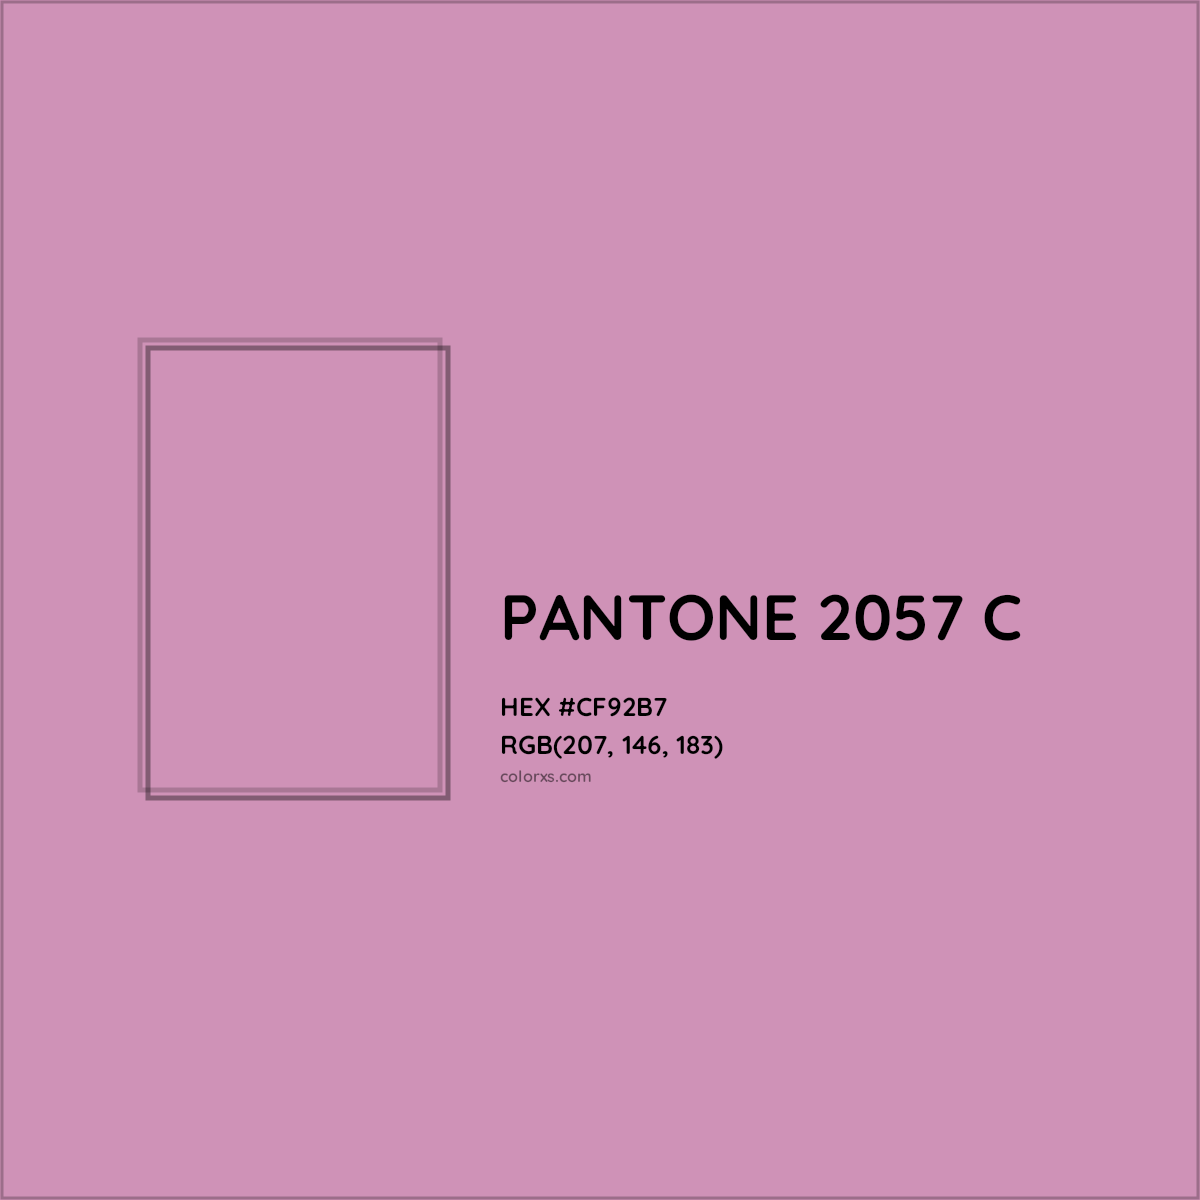 HEX #CF92B7 PANTONE 2057 C CMS Pantone PMS - Color Code